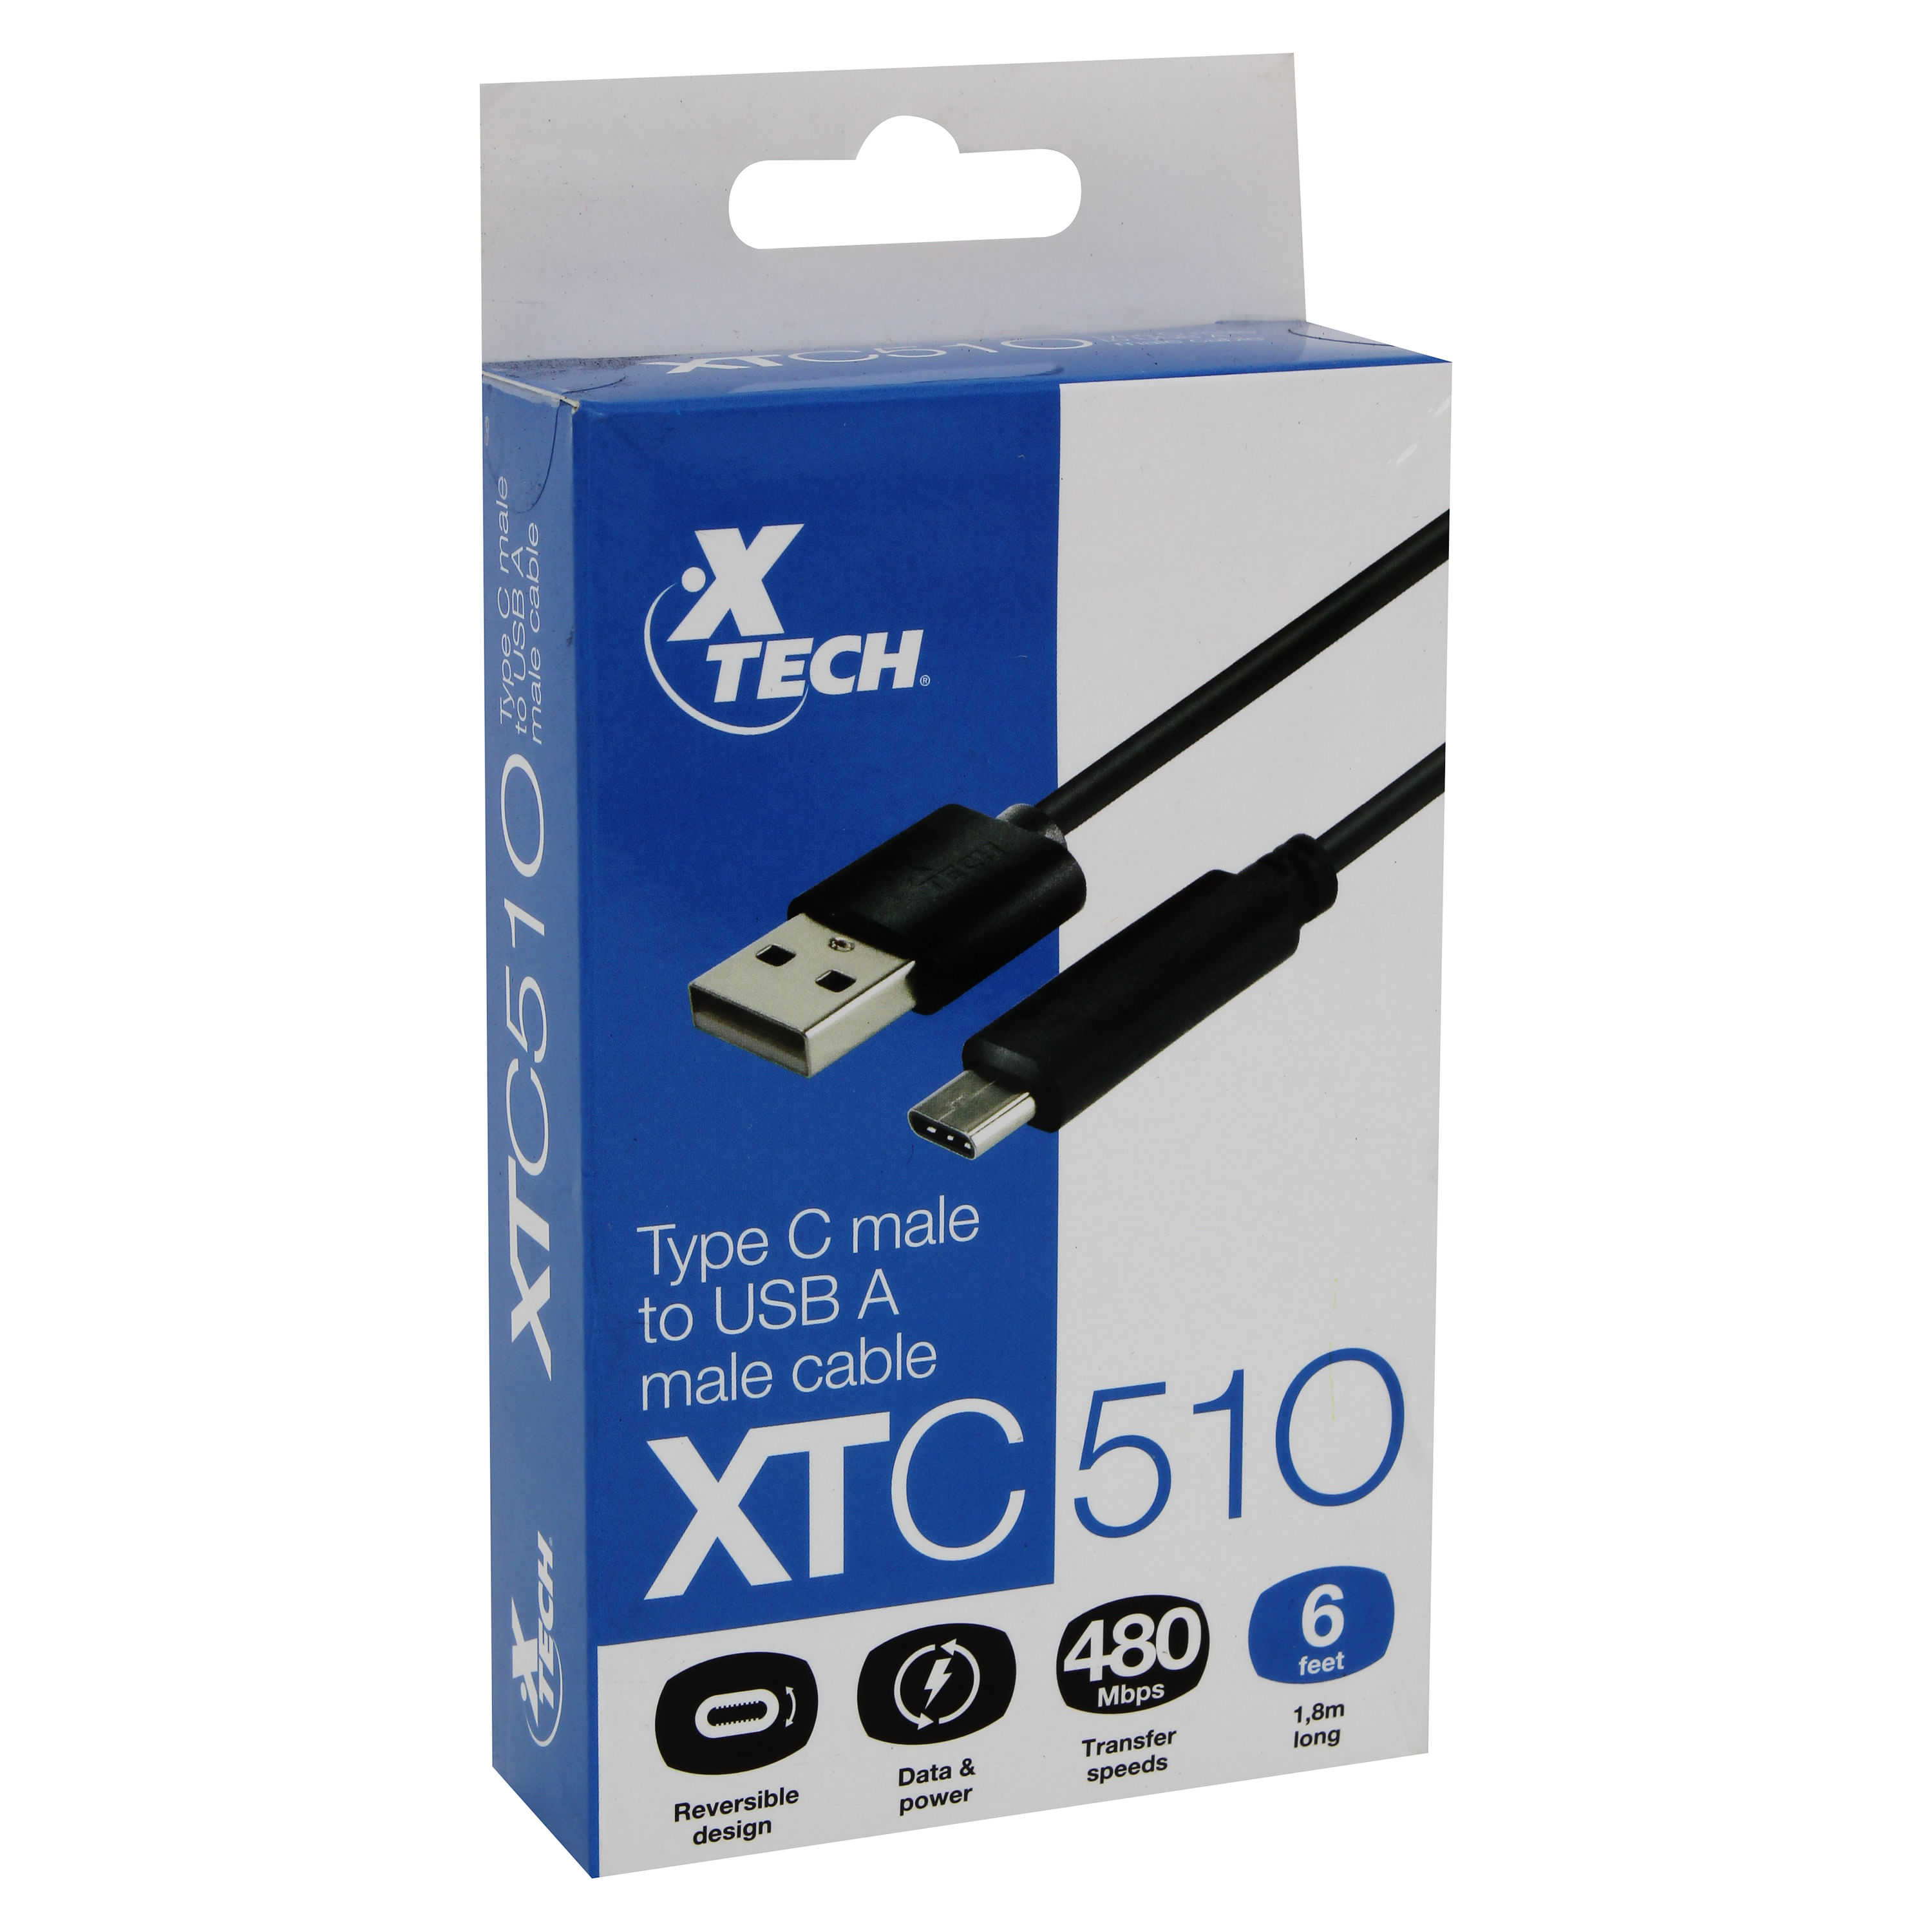 Comprar Cable Xtech Hdmi 6Ft Xtc406, Walmart Costa Rica - Maxi Palí